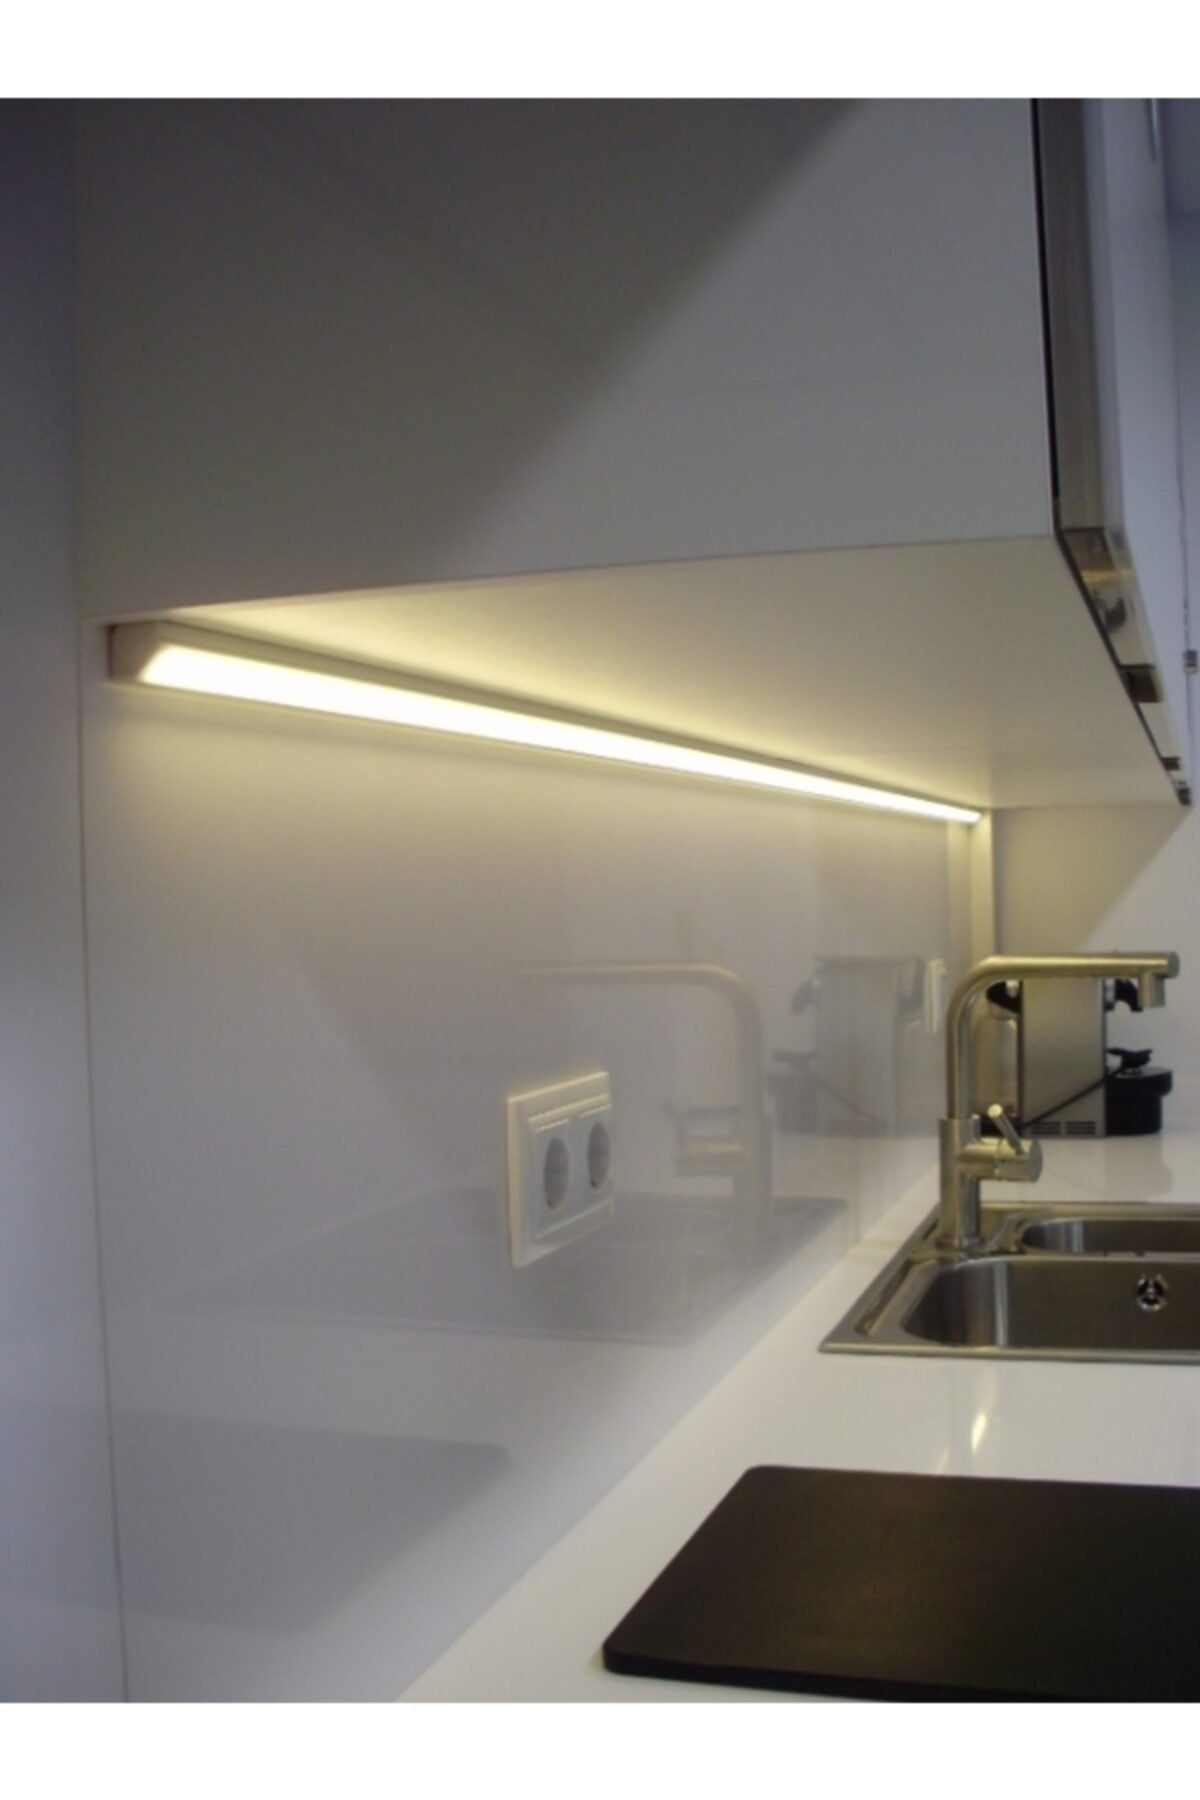 подсветка в стеклянных шкафах кухни